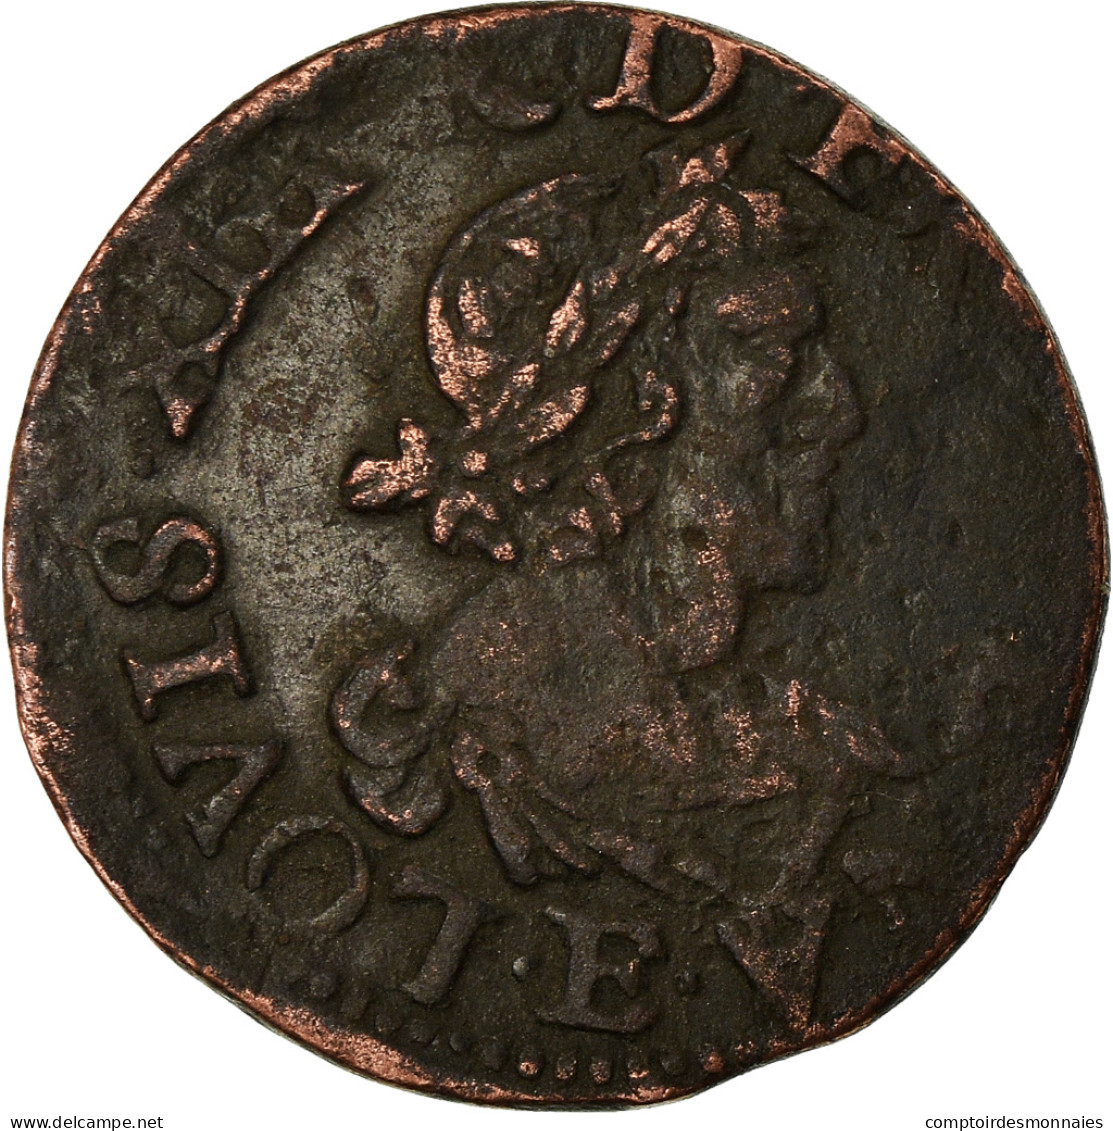 Monnaie, France, Louis XIII, Double Tournois, 1640, Tours, TB+, Gad 11 - 1610-1643 Ludwig XIII. Der Gerechte